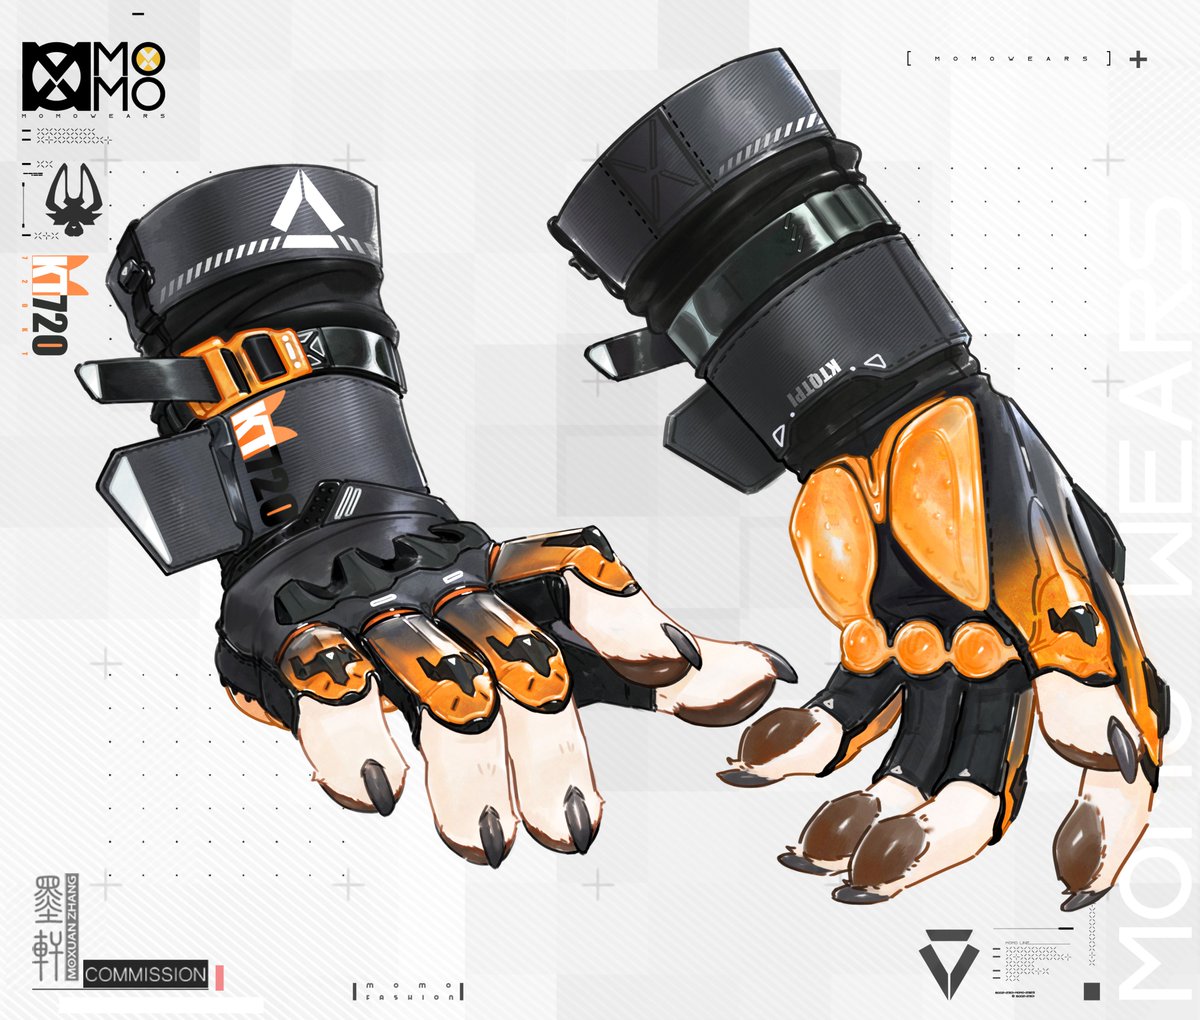 Commission✨ Gloves for
@nogonip